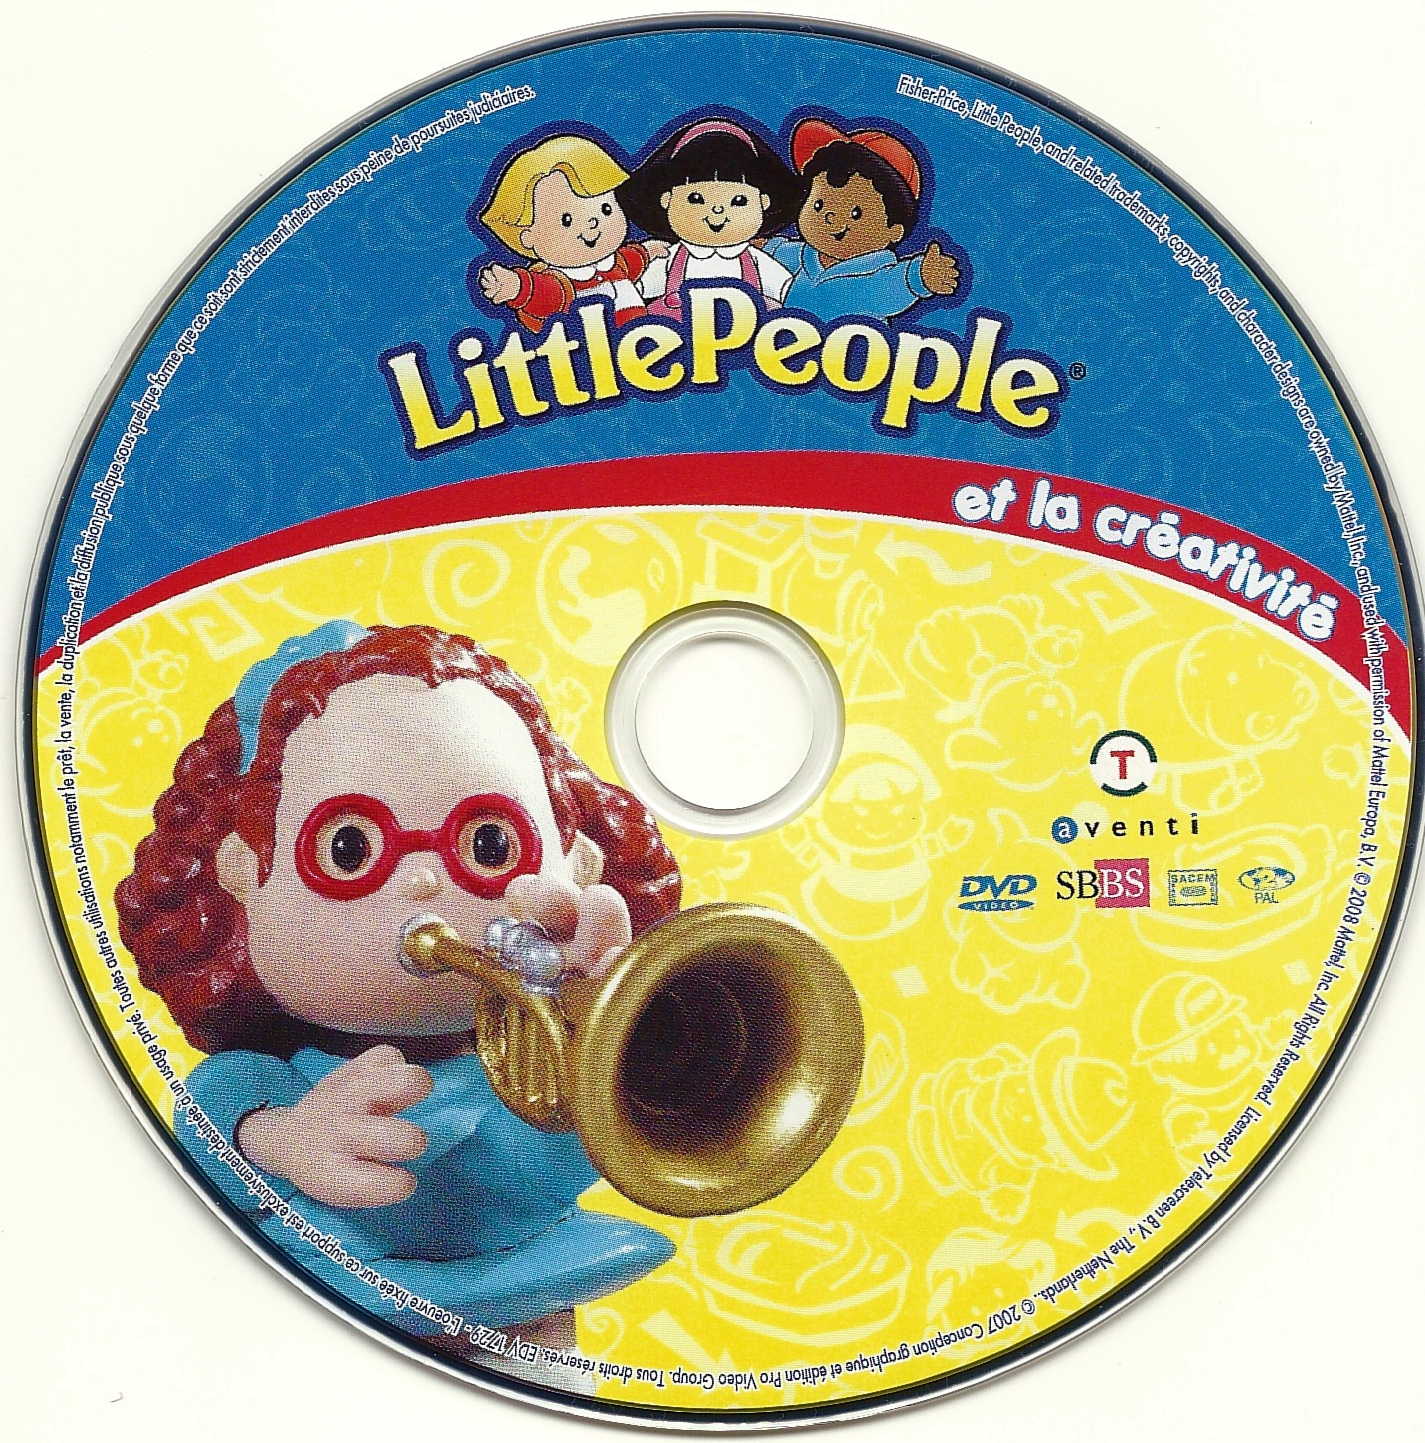 Little people et la creativite vol 01